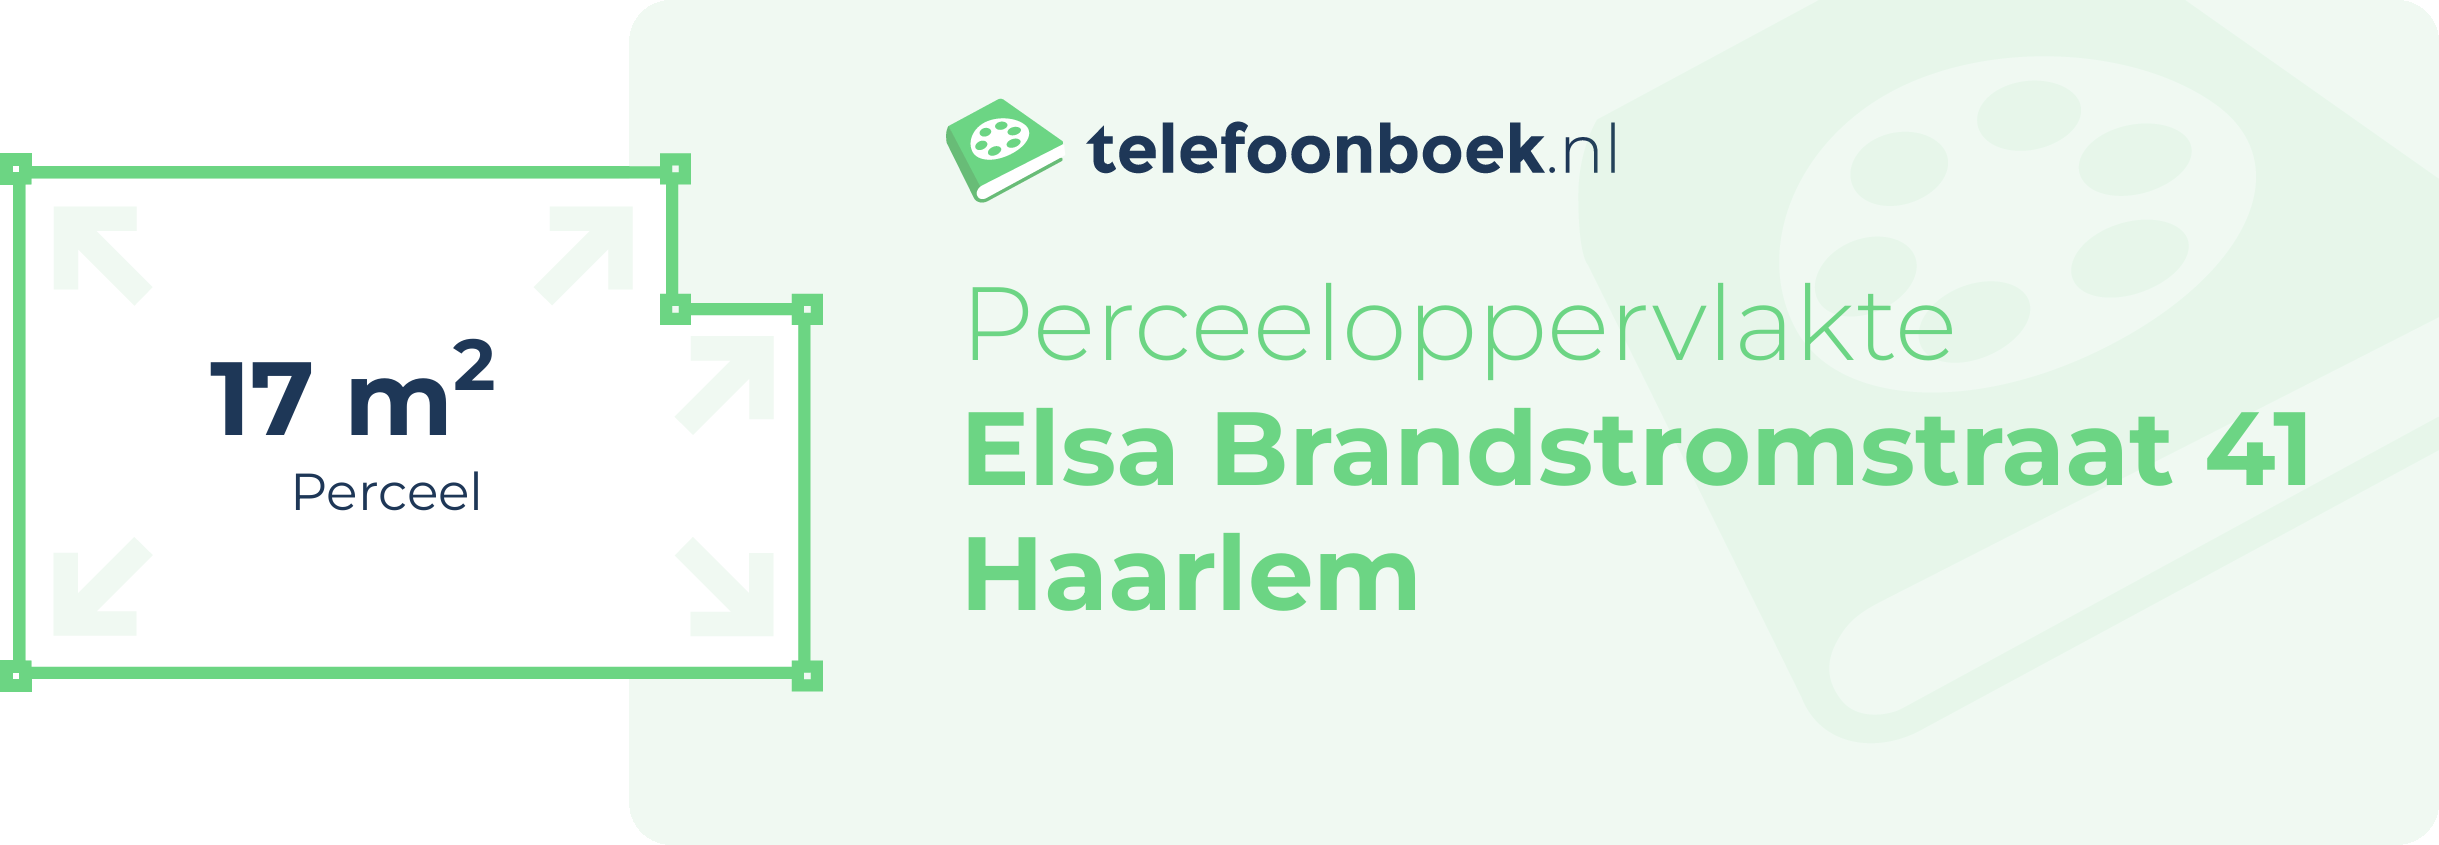 Perceeloppervlakte Elsa Brandstromstraat 41 Haarlem